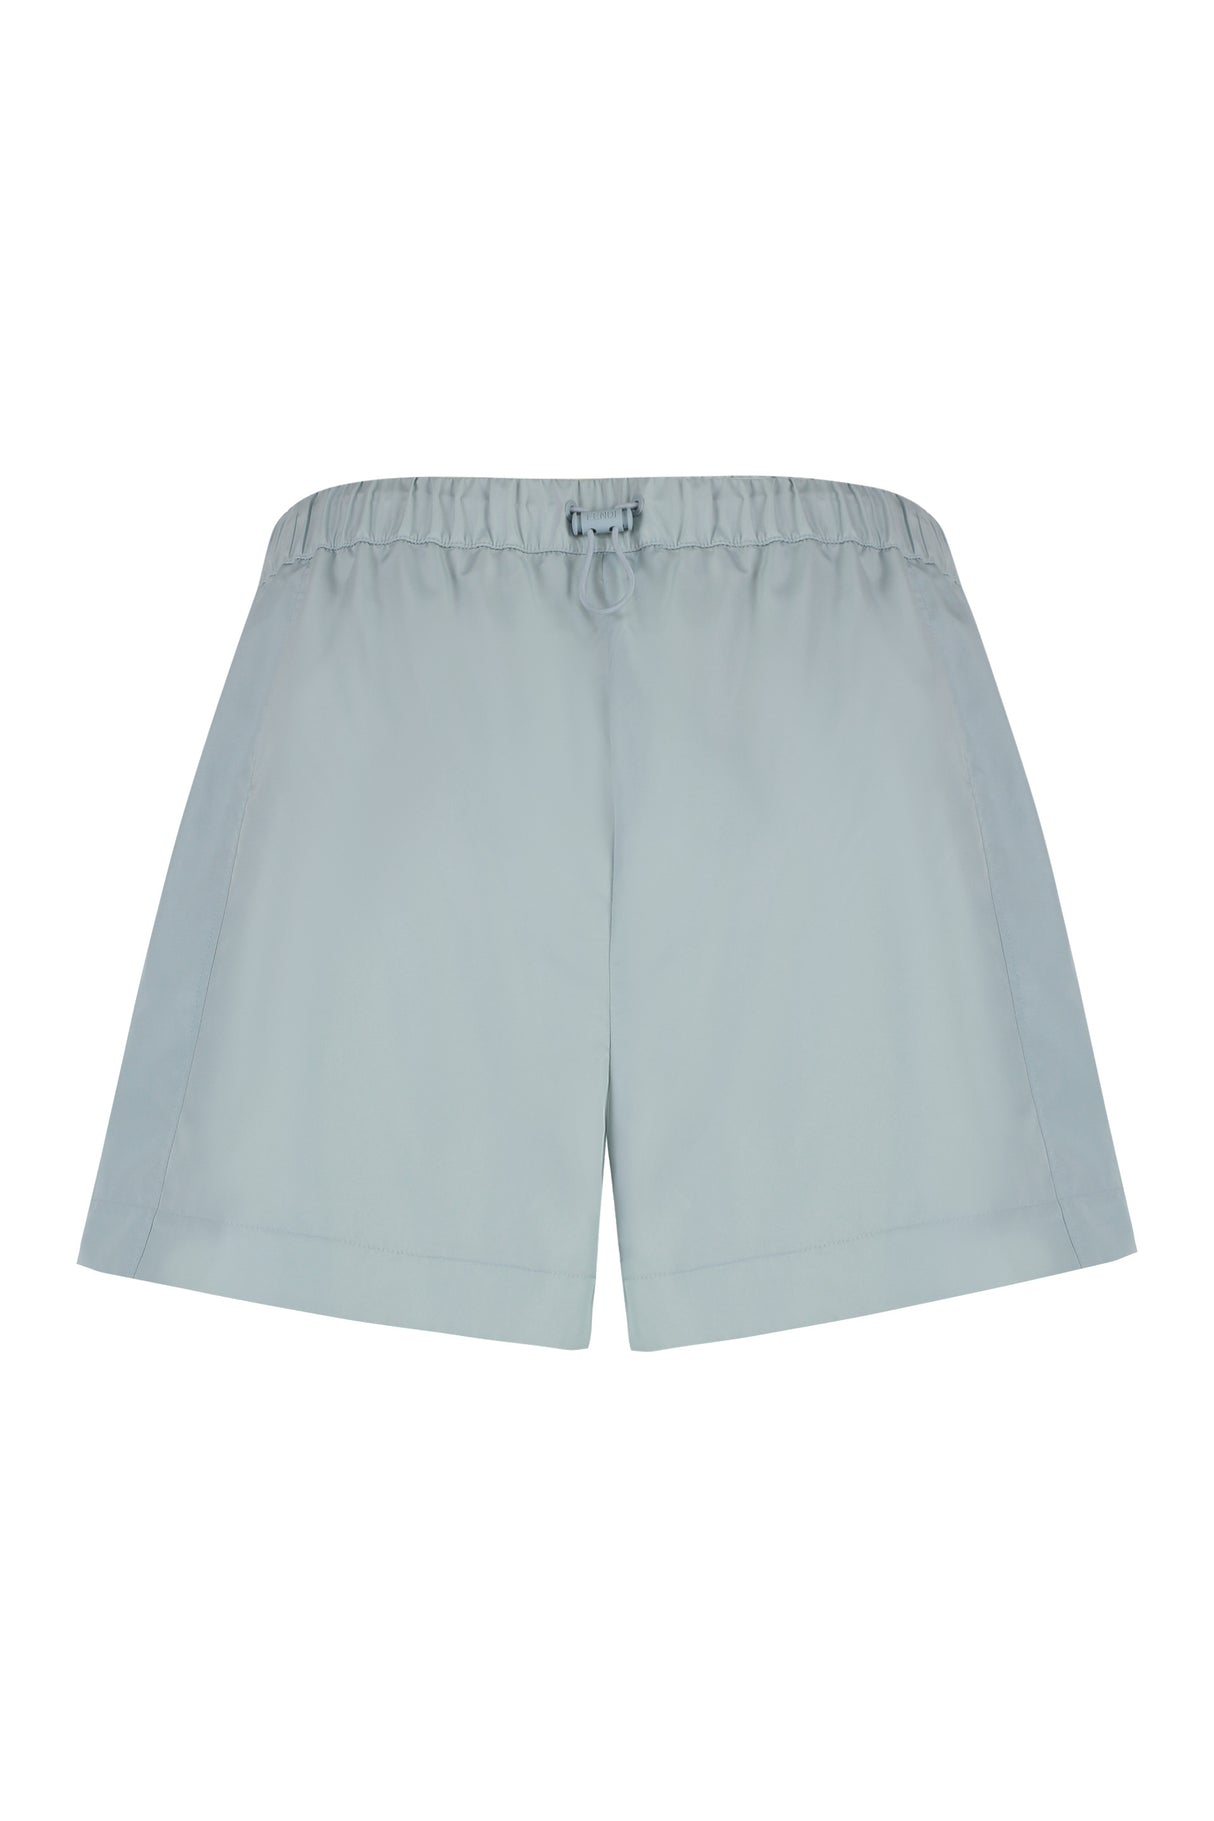 Shorts có dây rút điều chỉnh dành cho nữ màu xanh nhạt (SS24)